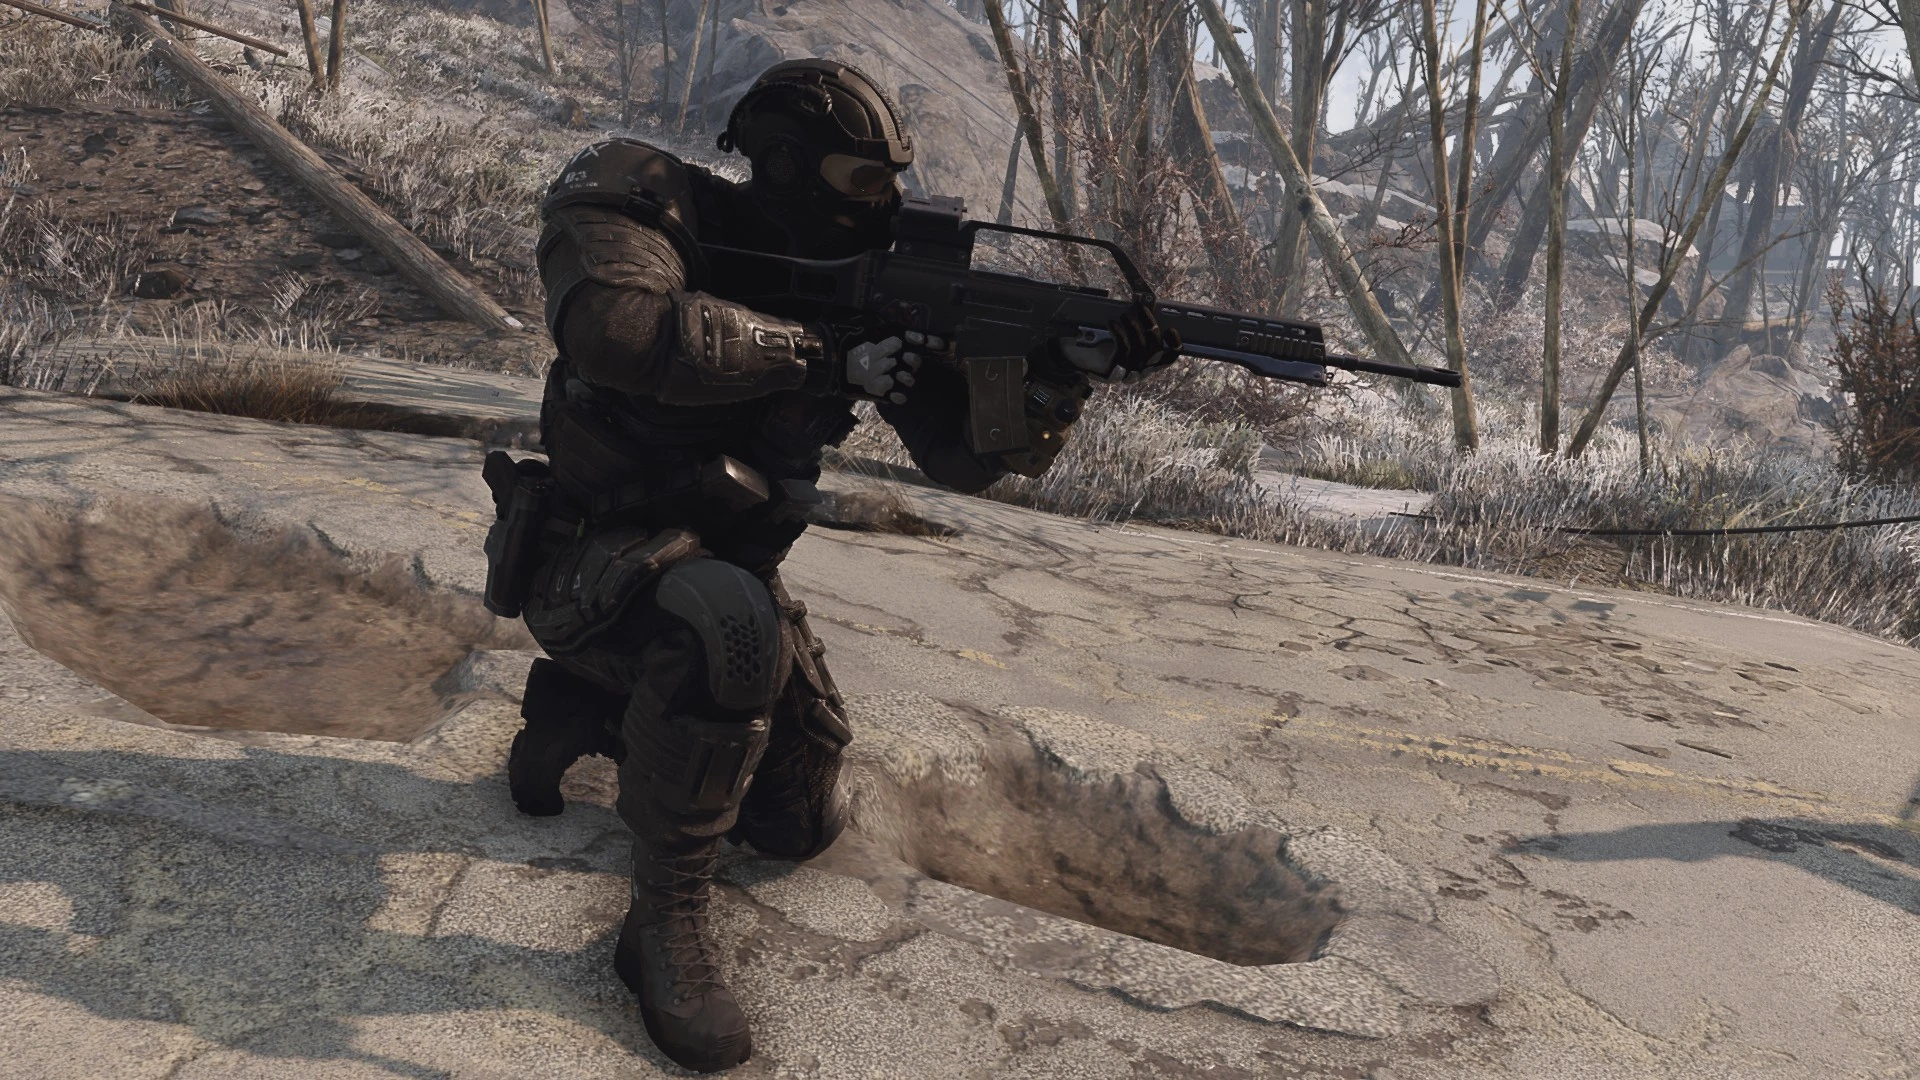 fallout 4 combat rifle suppressor